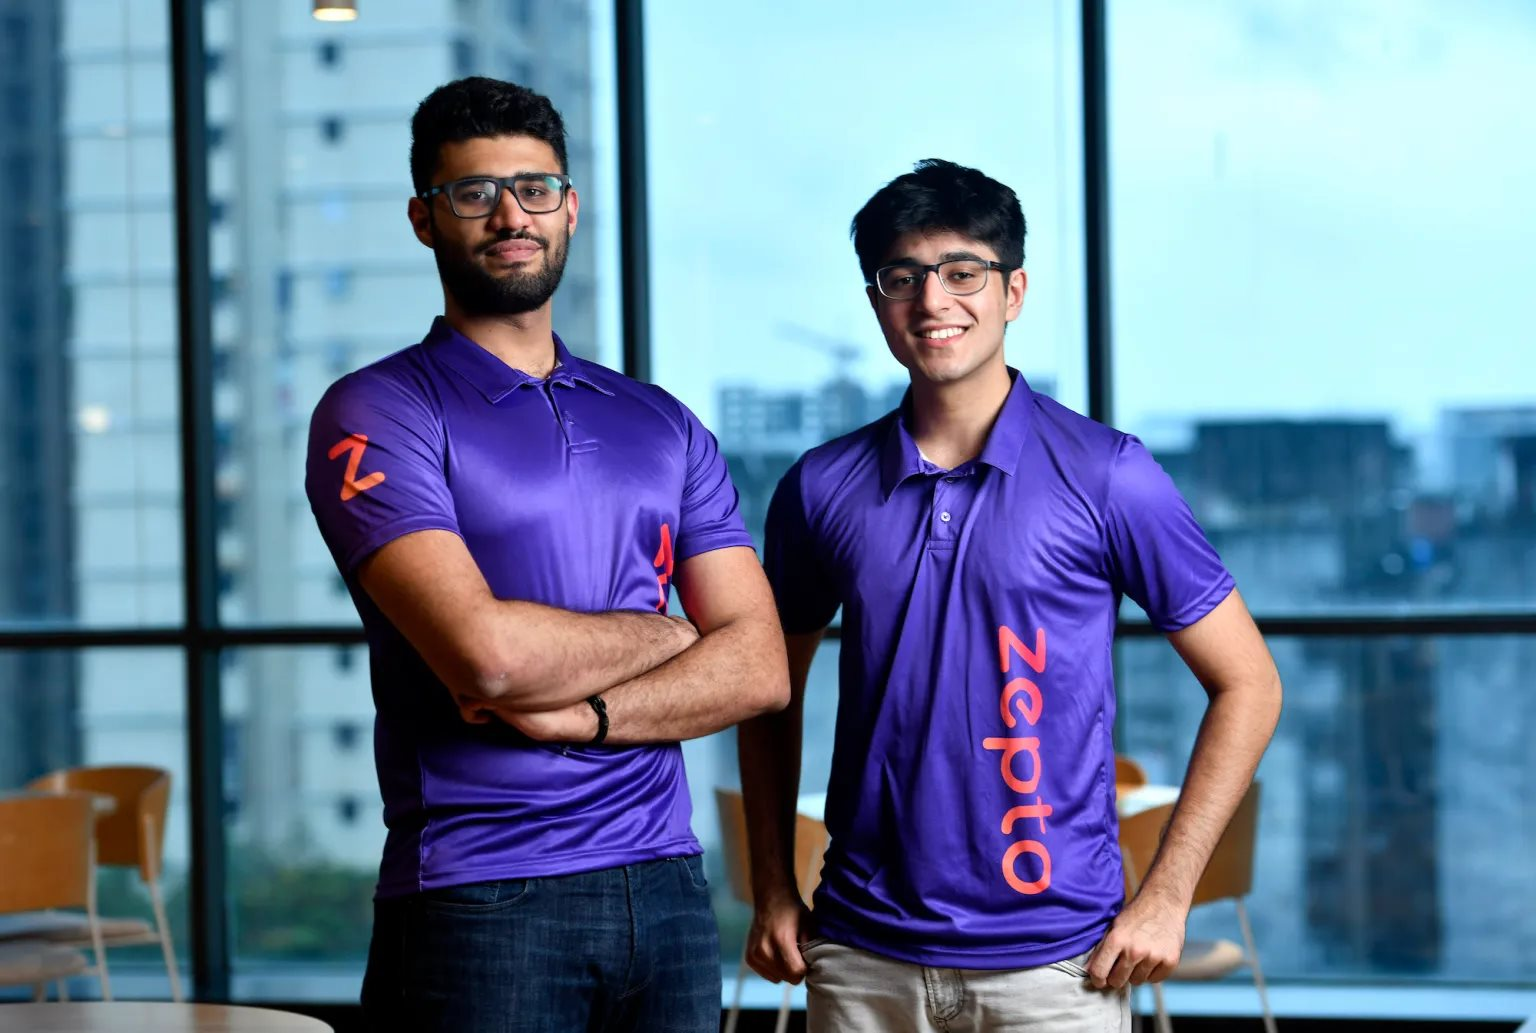 Dùng chiến lược 12 phút, hai thanh niên từng bỏ học Stanford trở thành ông chủ của startup công nghệ tỷ USD